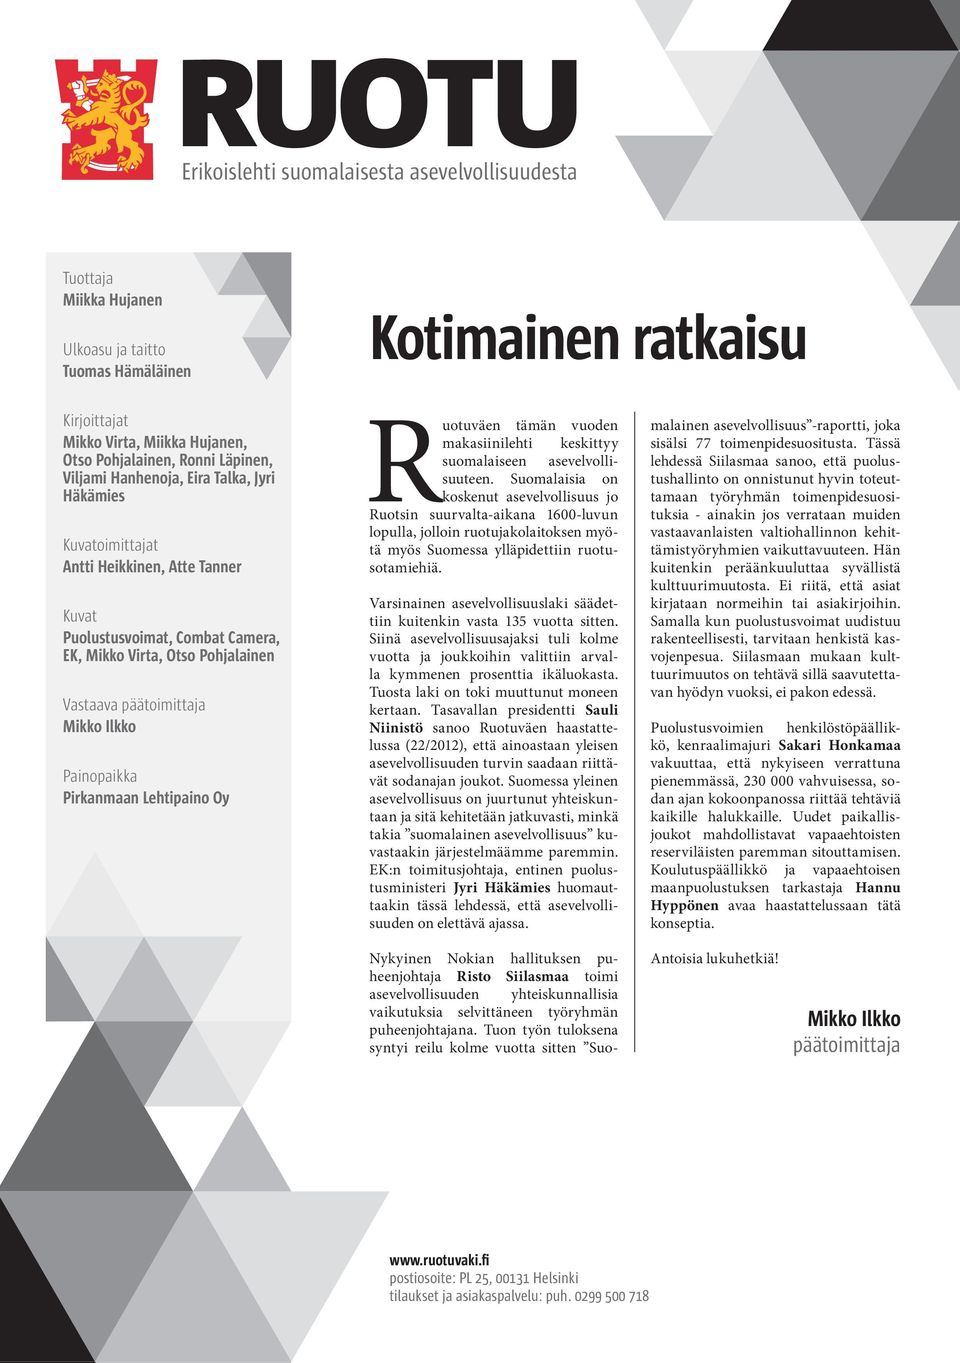 Ilkko Painopaikka Pirkanmaan Lehtipaino Oy Ruotuväen tämän vuoden makasiinilehti keskittyy suomalaiseen asevelvollisuuteen.